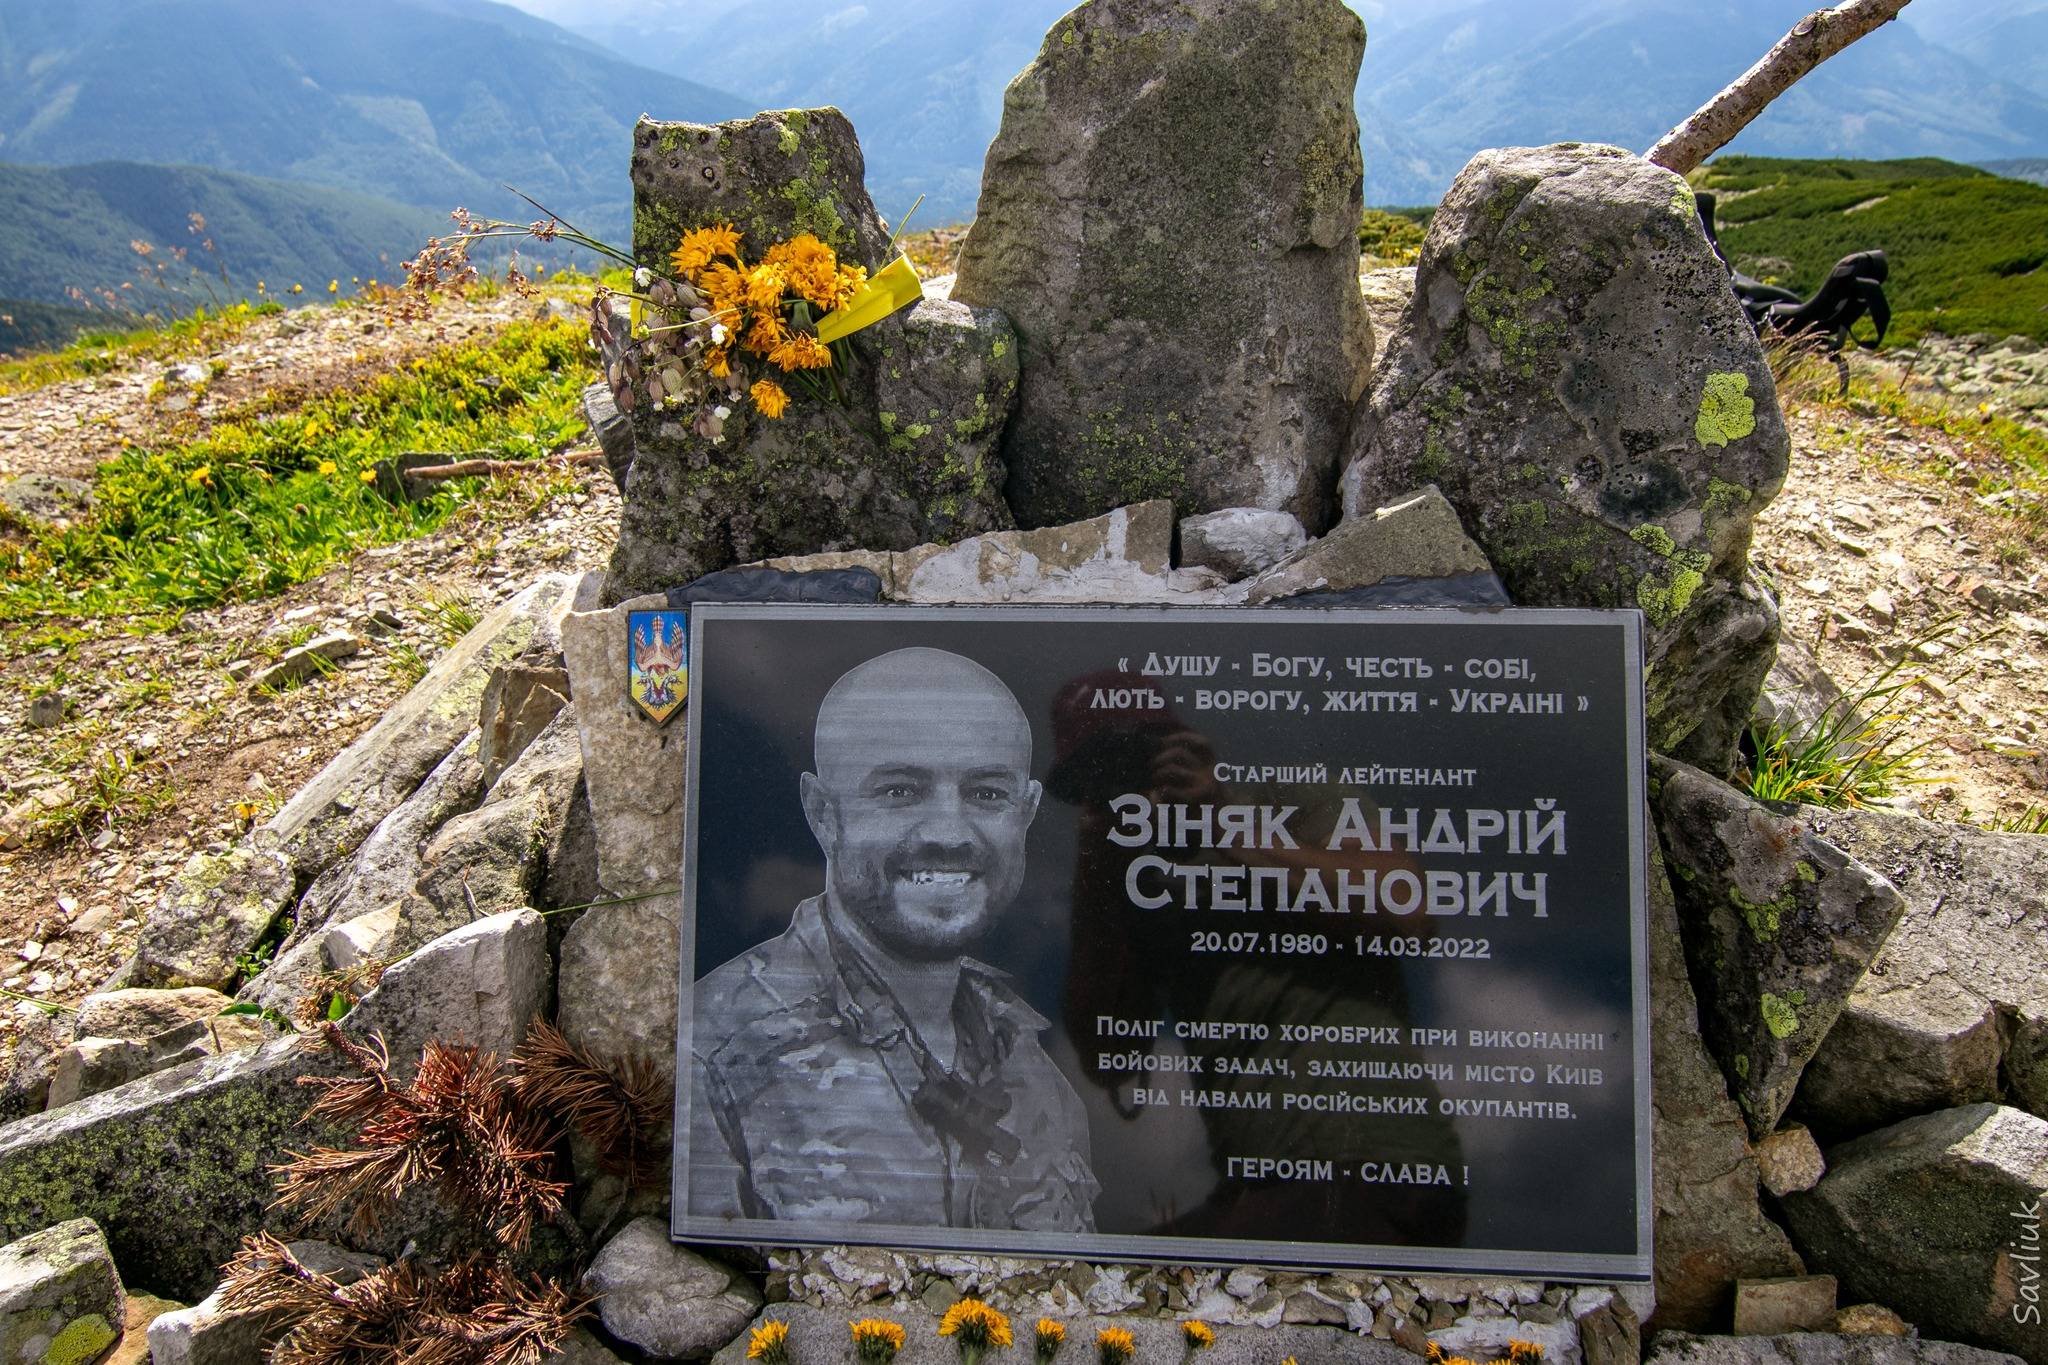 A memorial plaque to Andrii Ziniak on Mount Vysoka in Horhany. Photo: Pravda tvoho mista